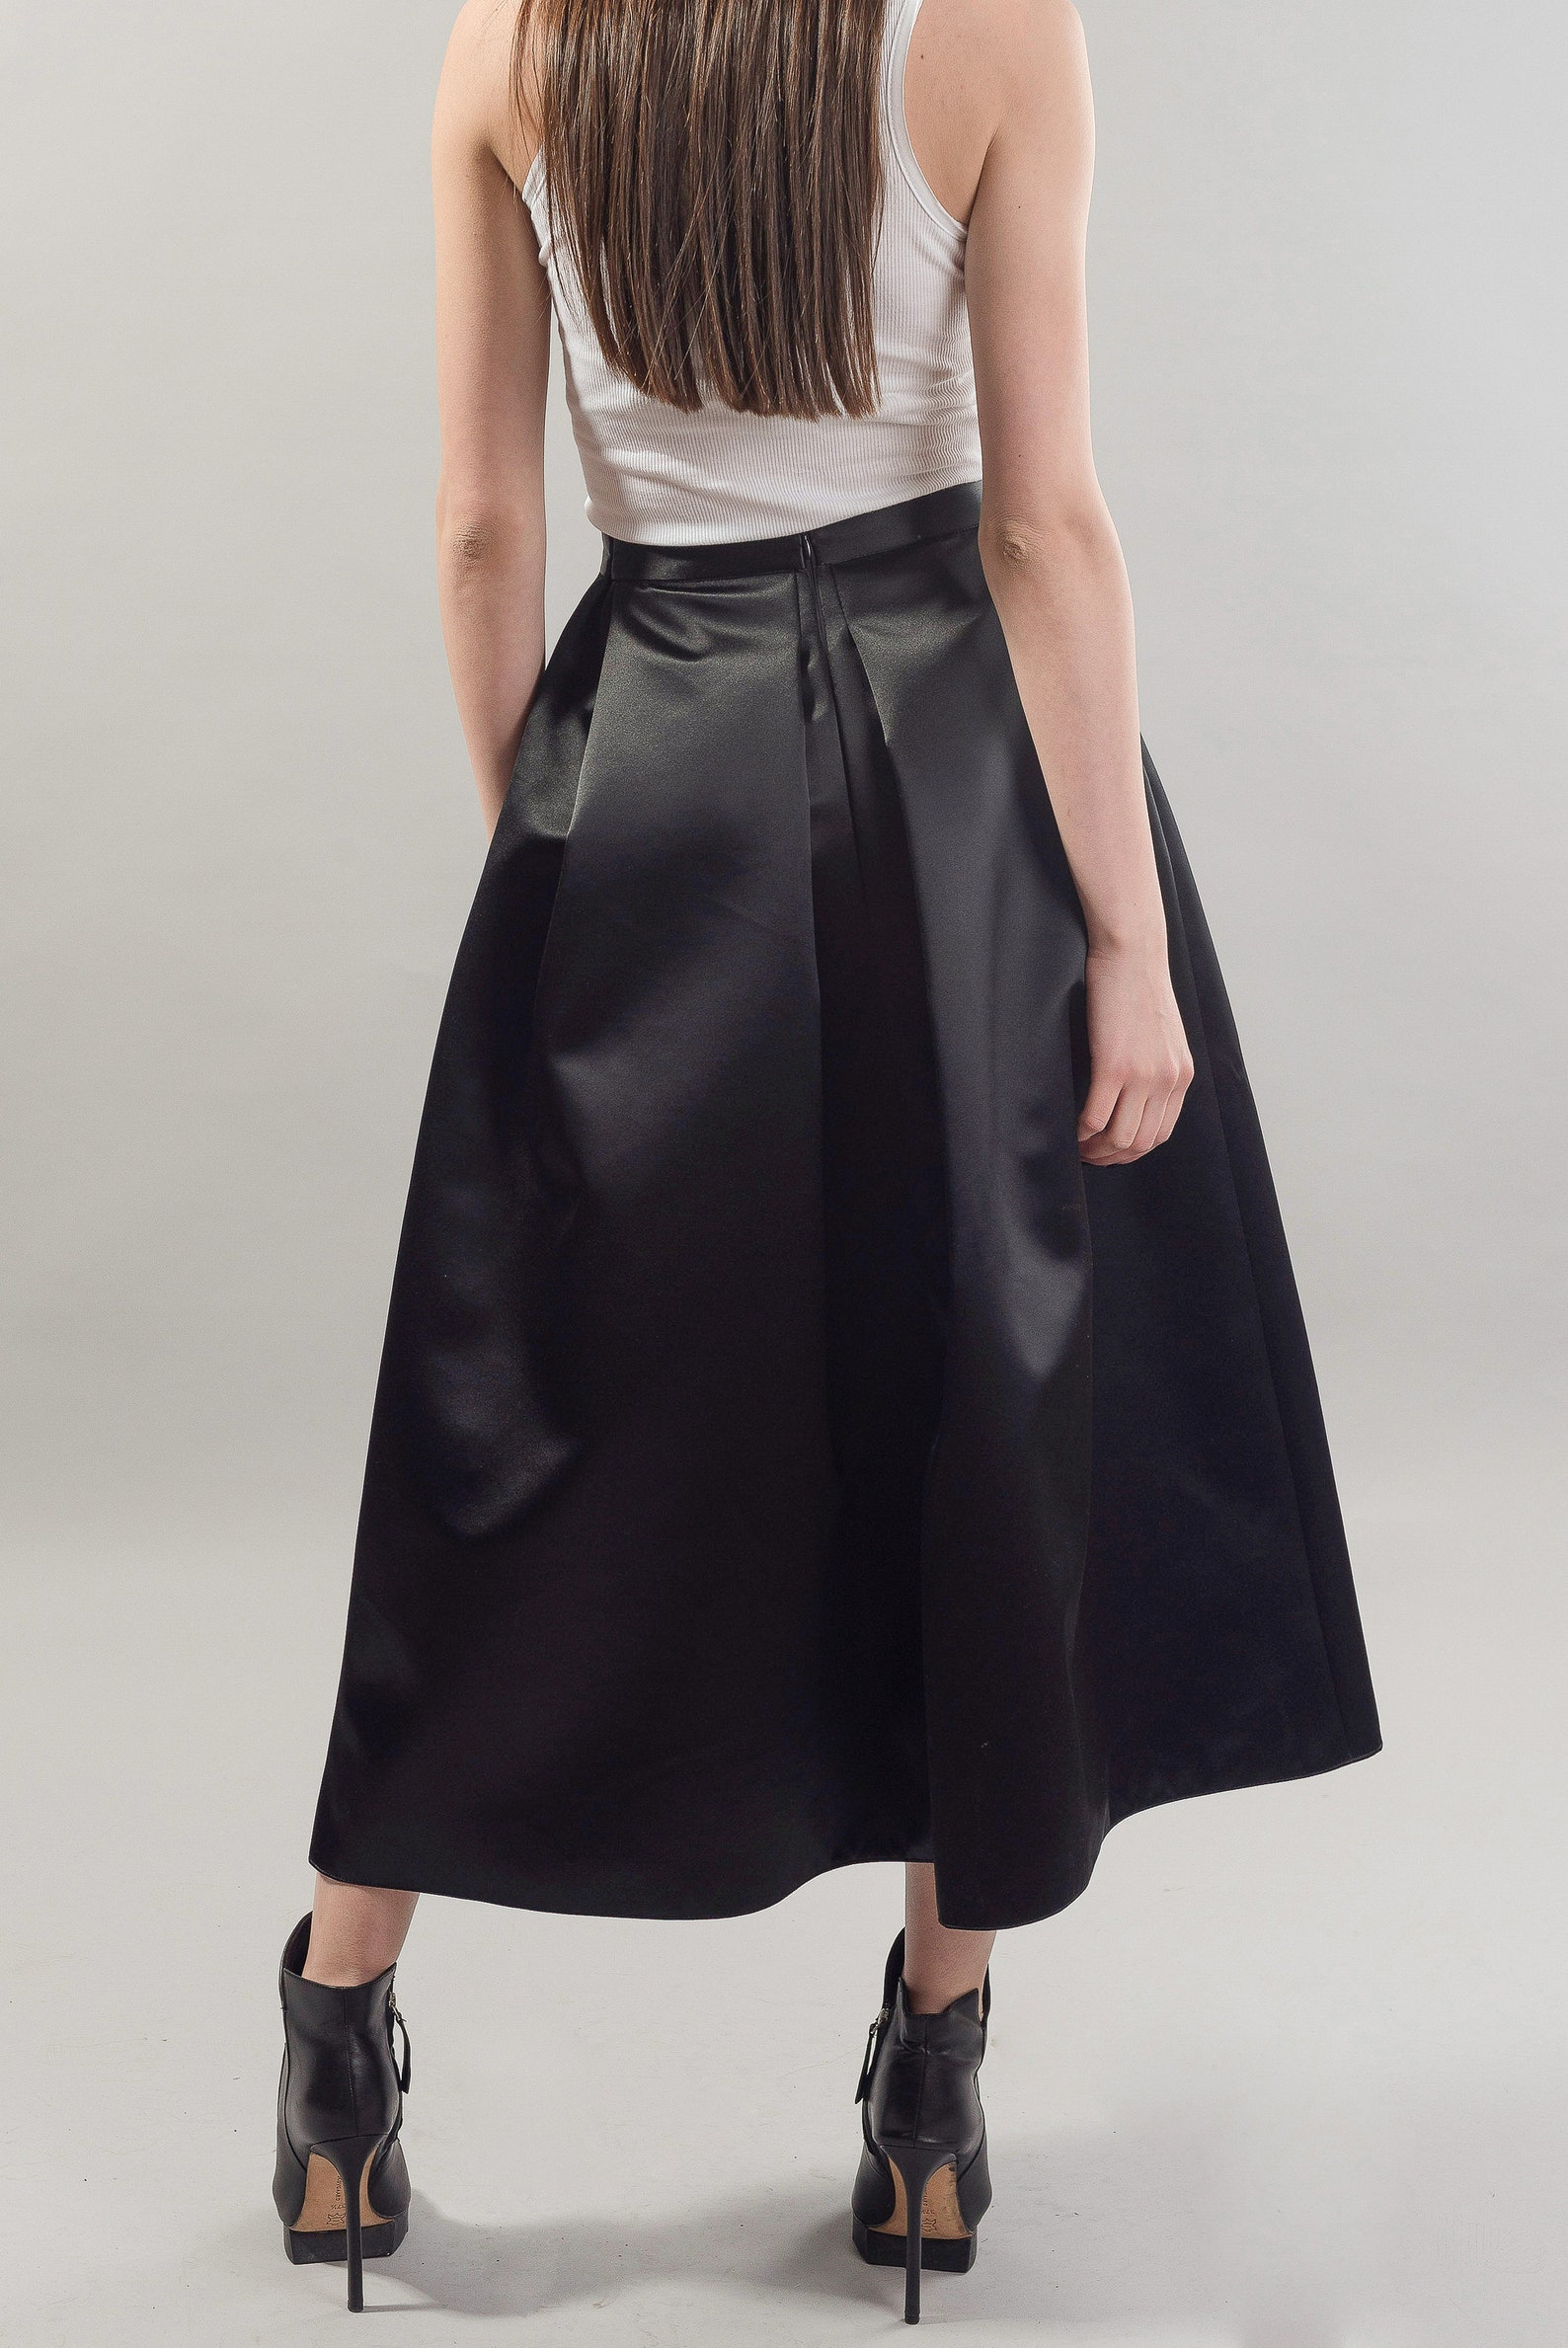 Lovely Black Midi Skirt/skirt With Pockets/belted Black - Etsy